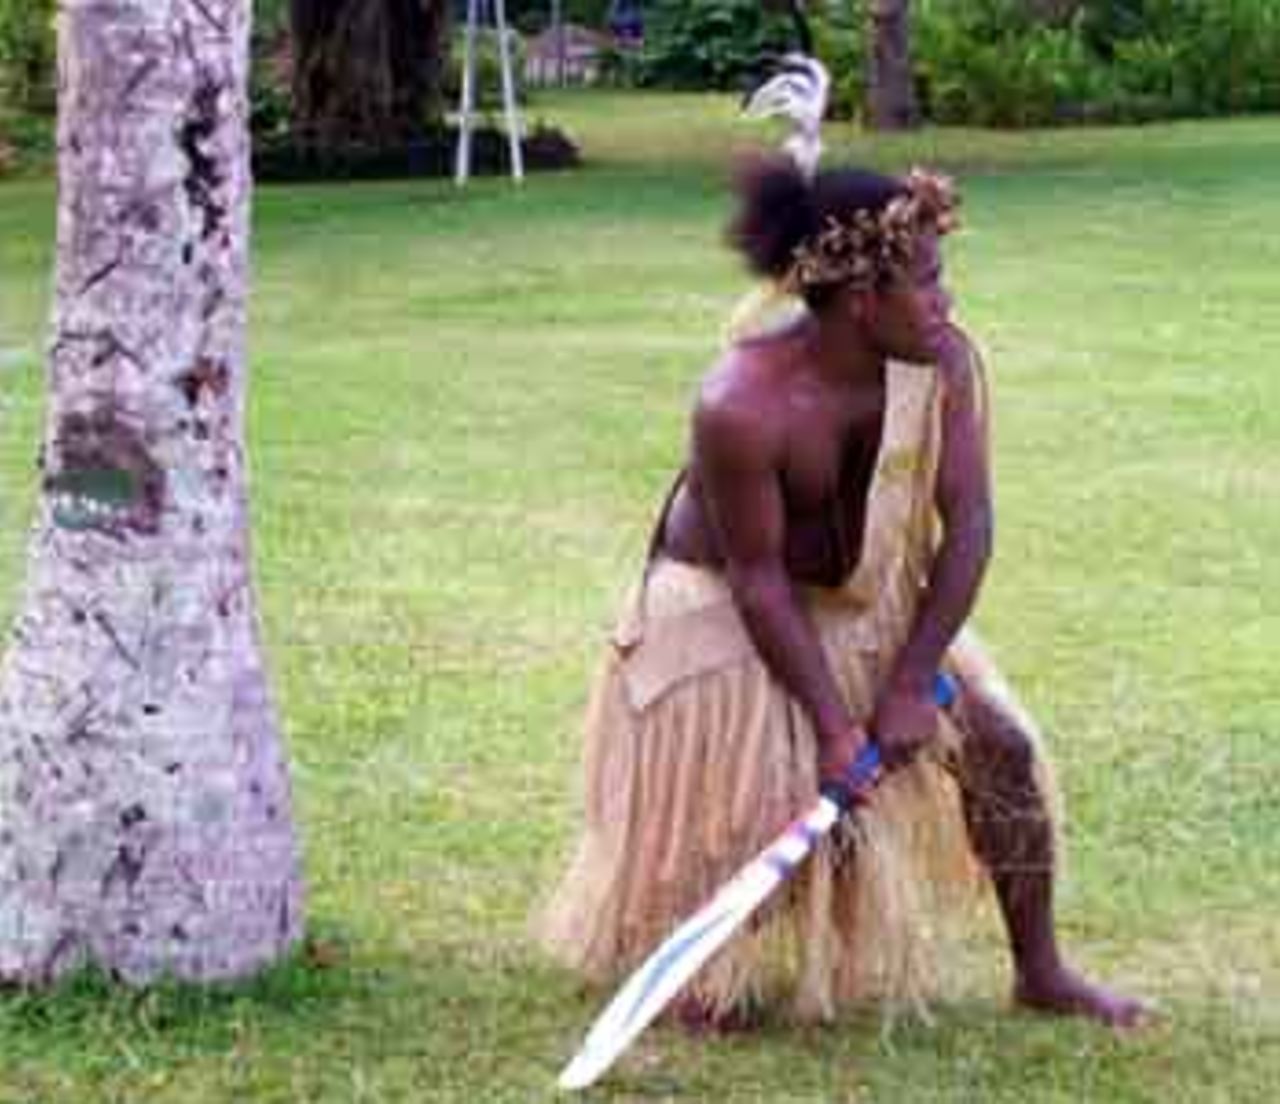 Traditional Vanuatu cricket uniform!